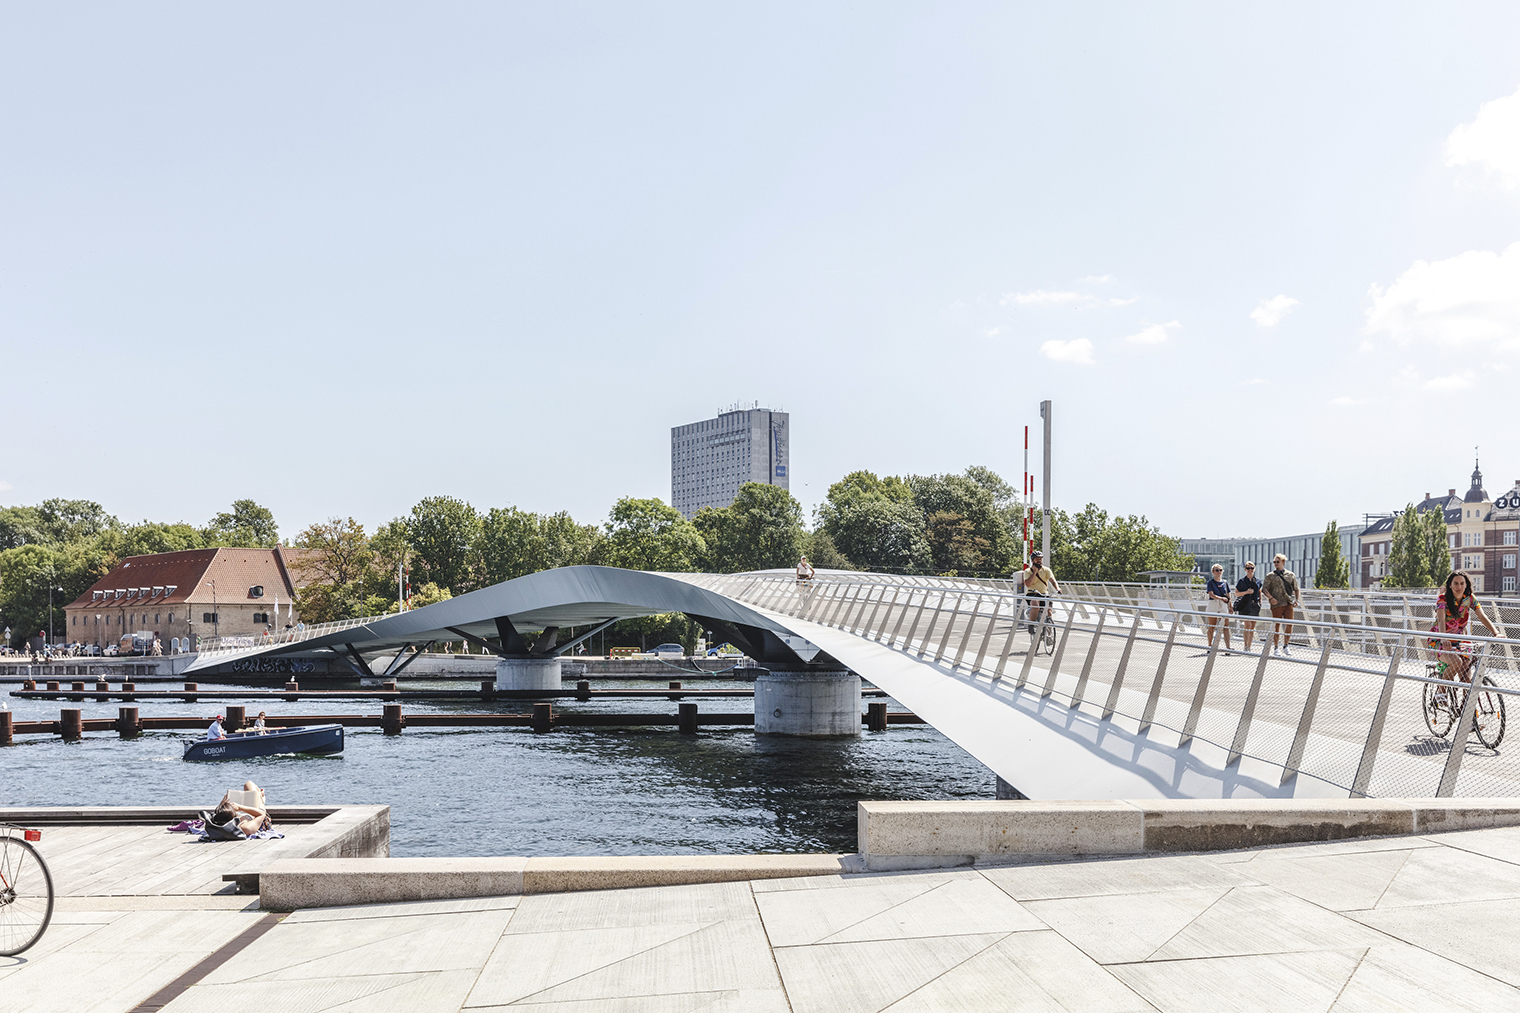 El puente Lille Langebro de Copenhage, para peatones y ciclistas, es uno de los finalistas en el Premio RIBA 2021. Diseñado por WilkinsonEyre y Urban Agency 